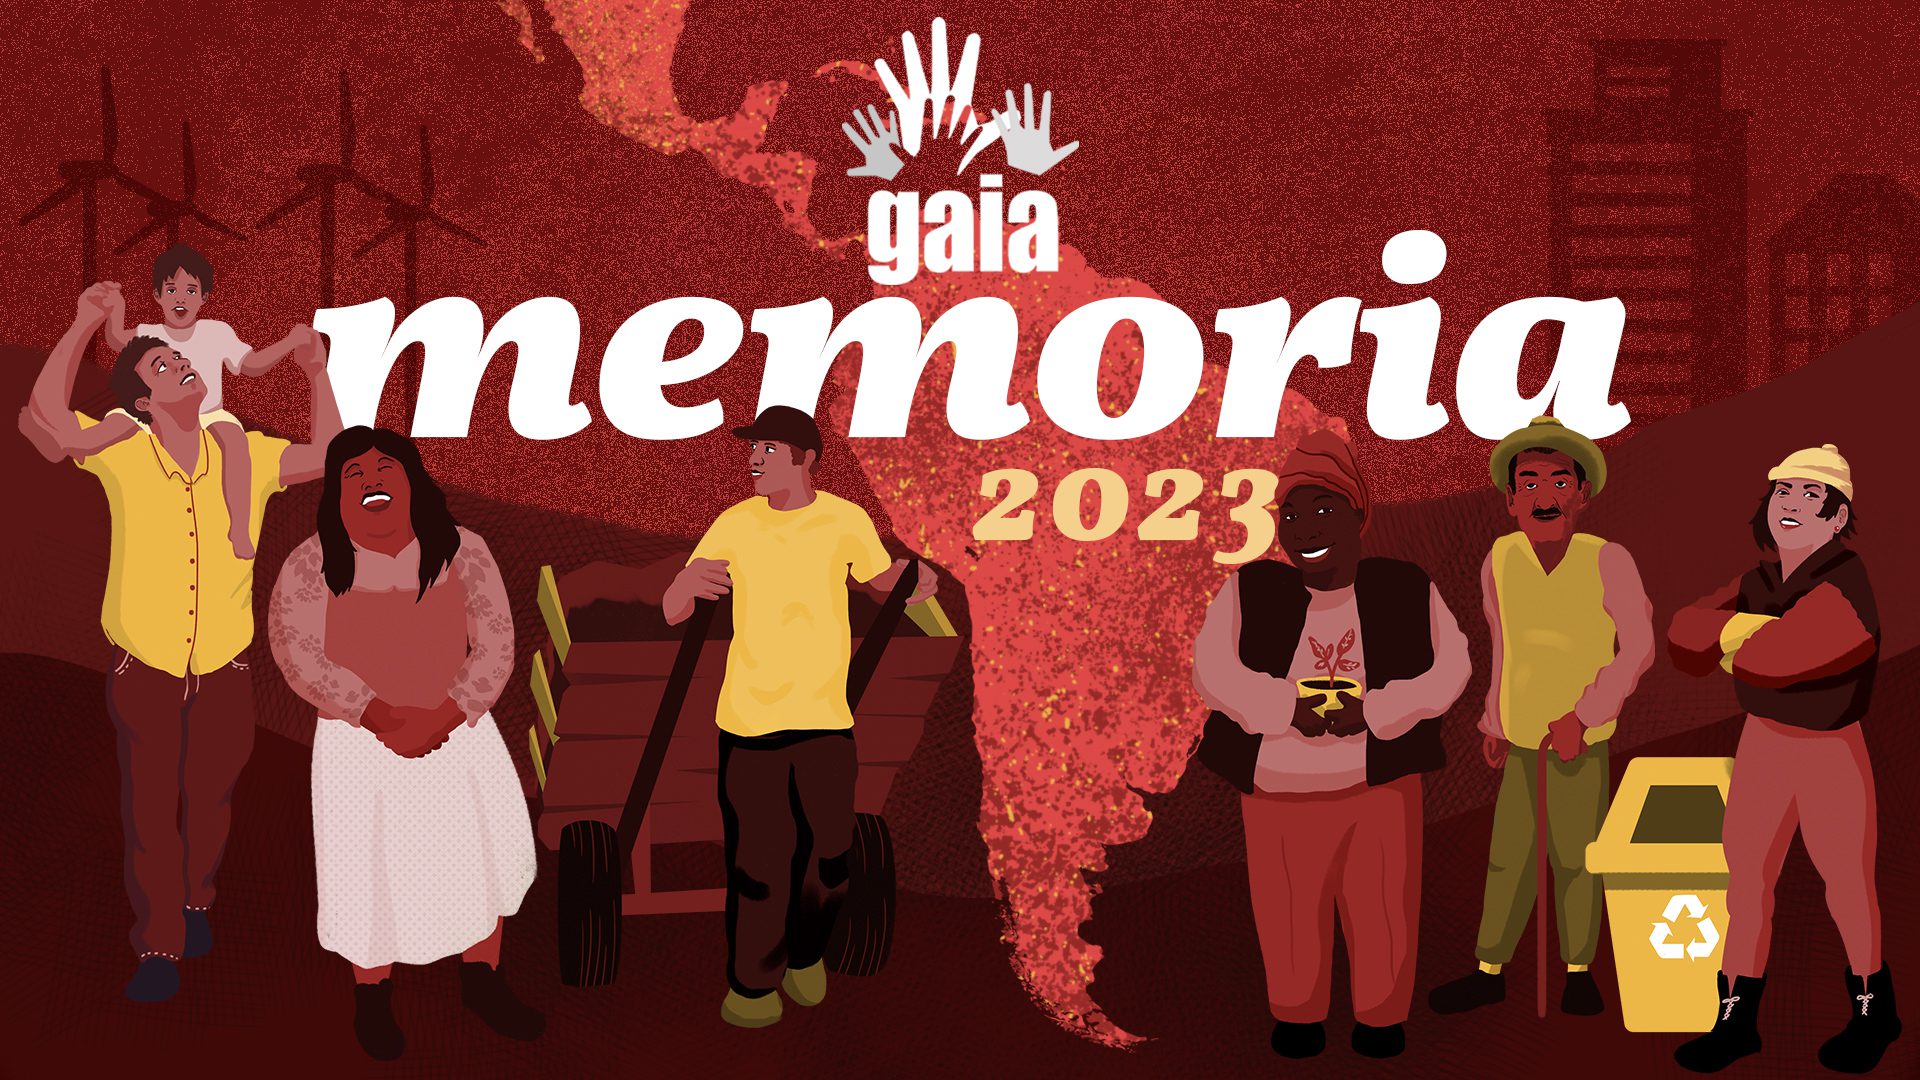 Портативная память GAIA 2023. Новый фонд с картой Латинской Америки и 6 персонажами, иллюстрирующими лос-мимброс GAIA.